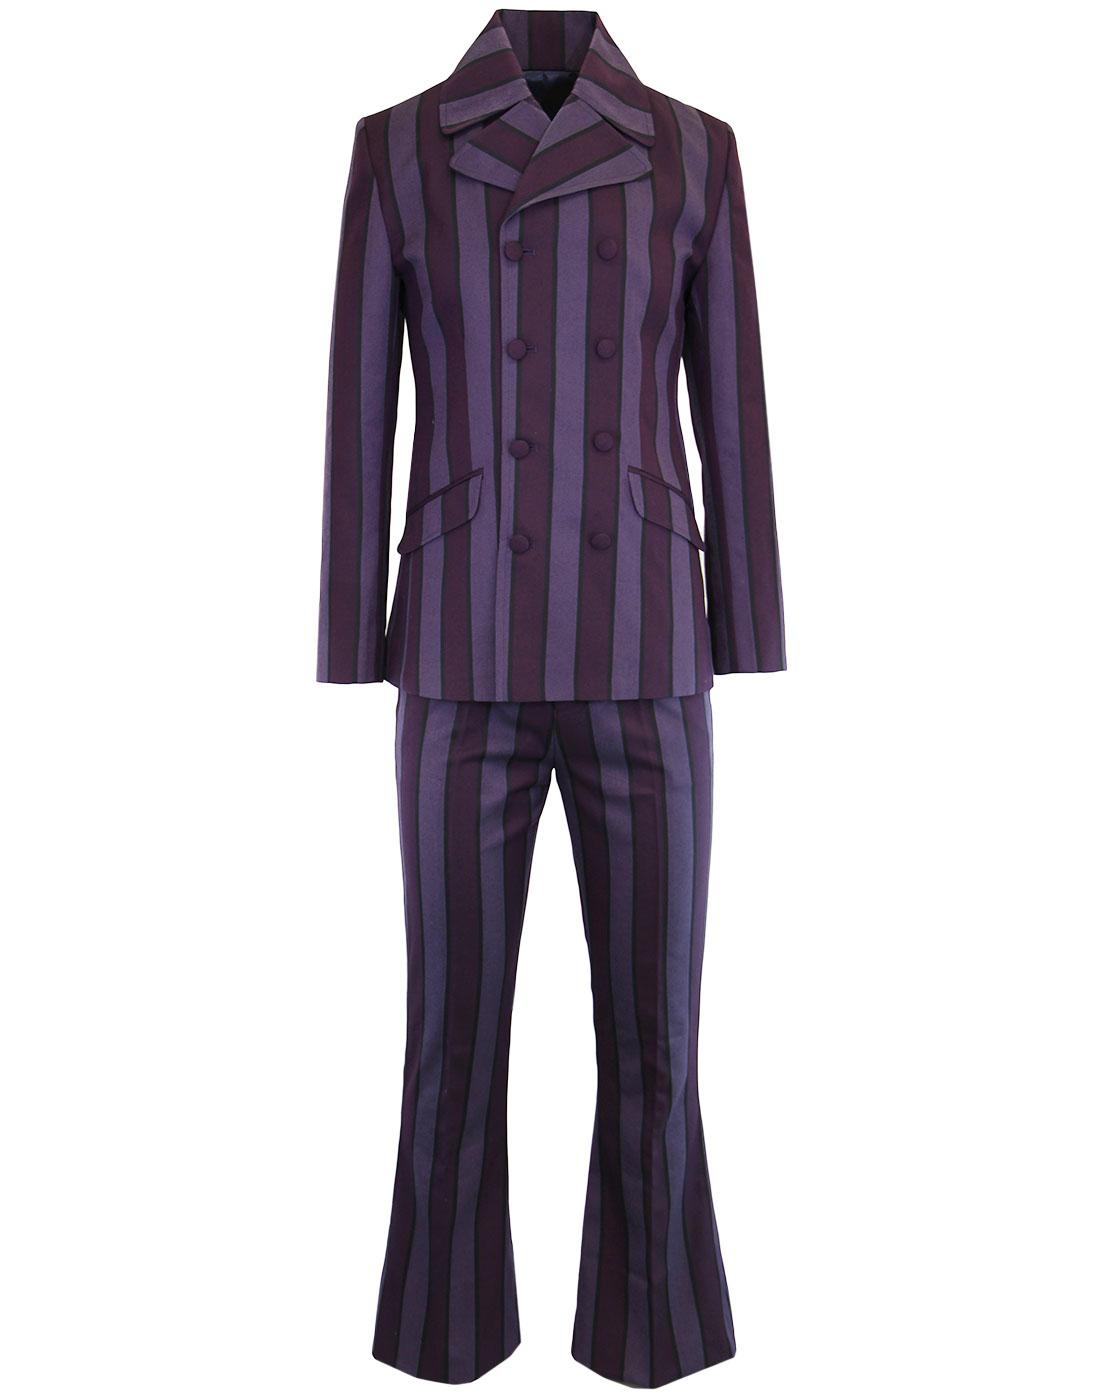 MADCAP ENGLAND Backbeat Mod 60s Flare Suit Purple